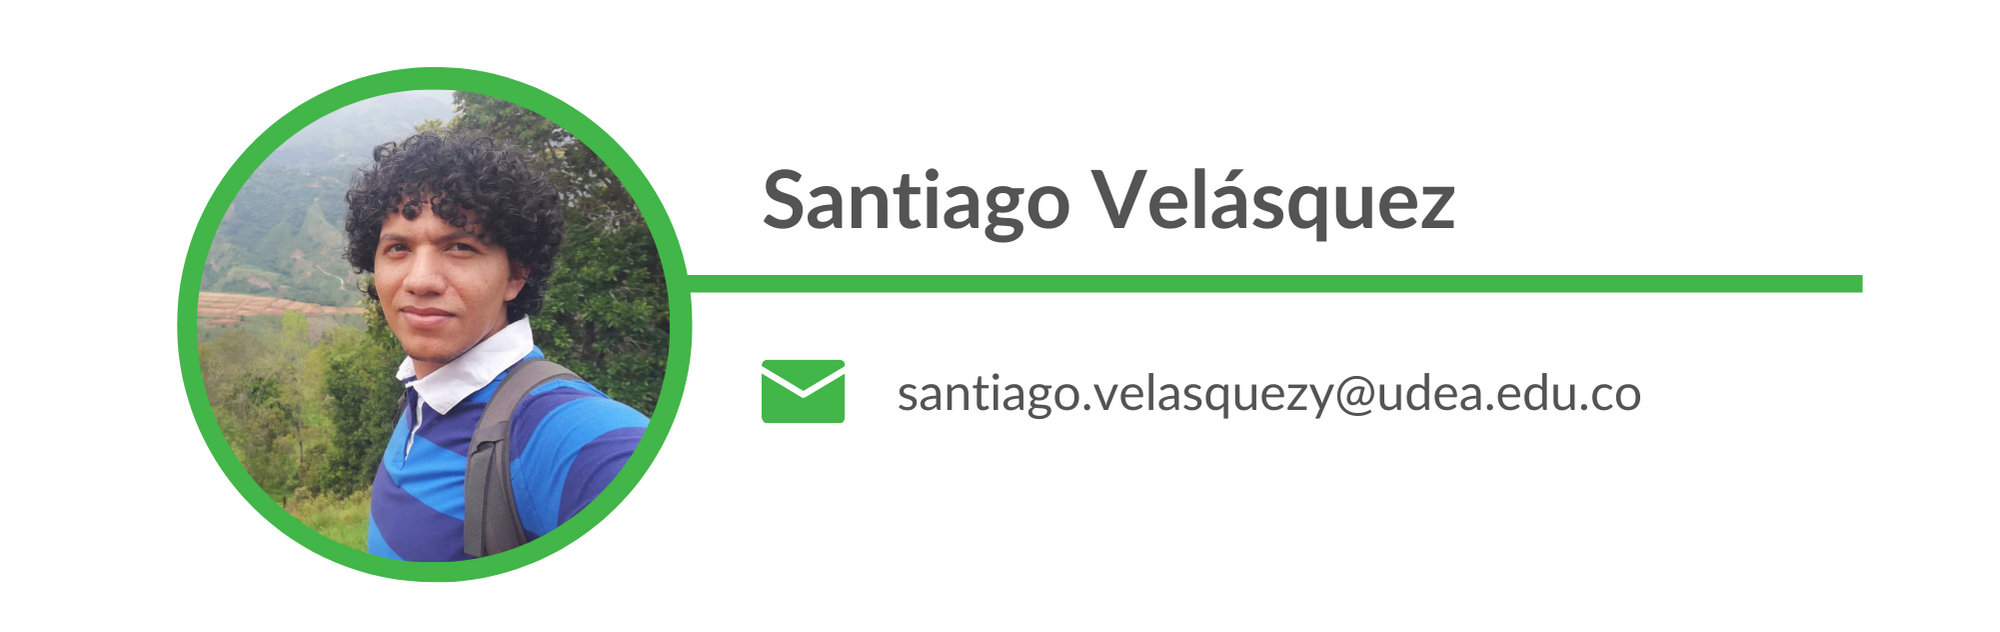 Santiago Velásquez. Email: santiago.velasquezy@udea.edu.co